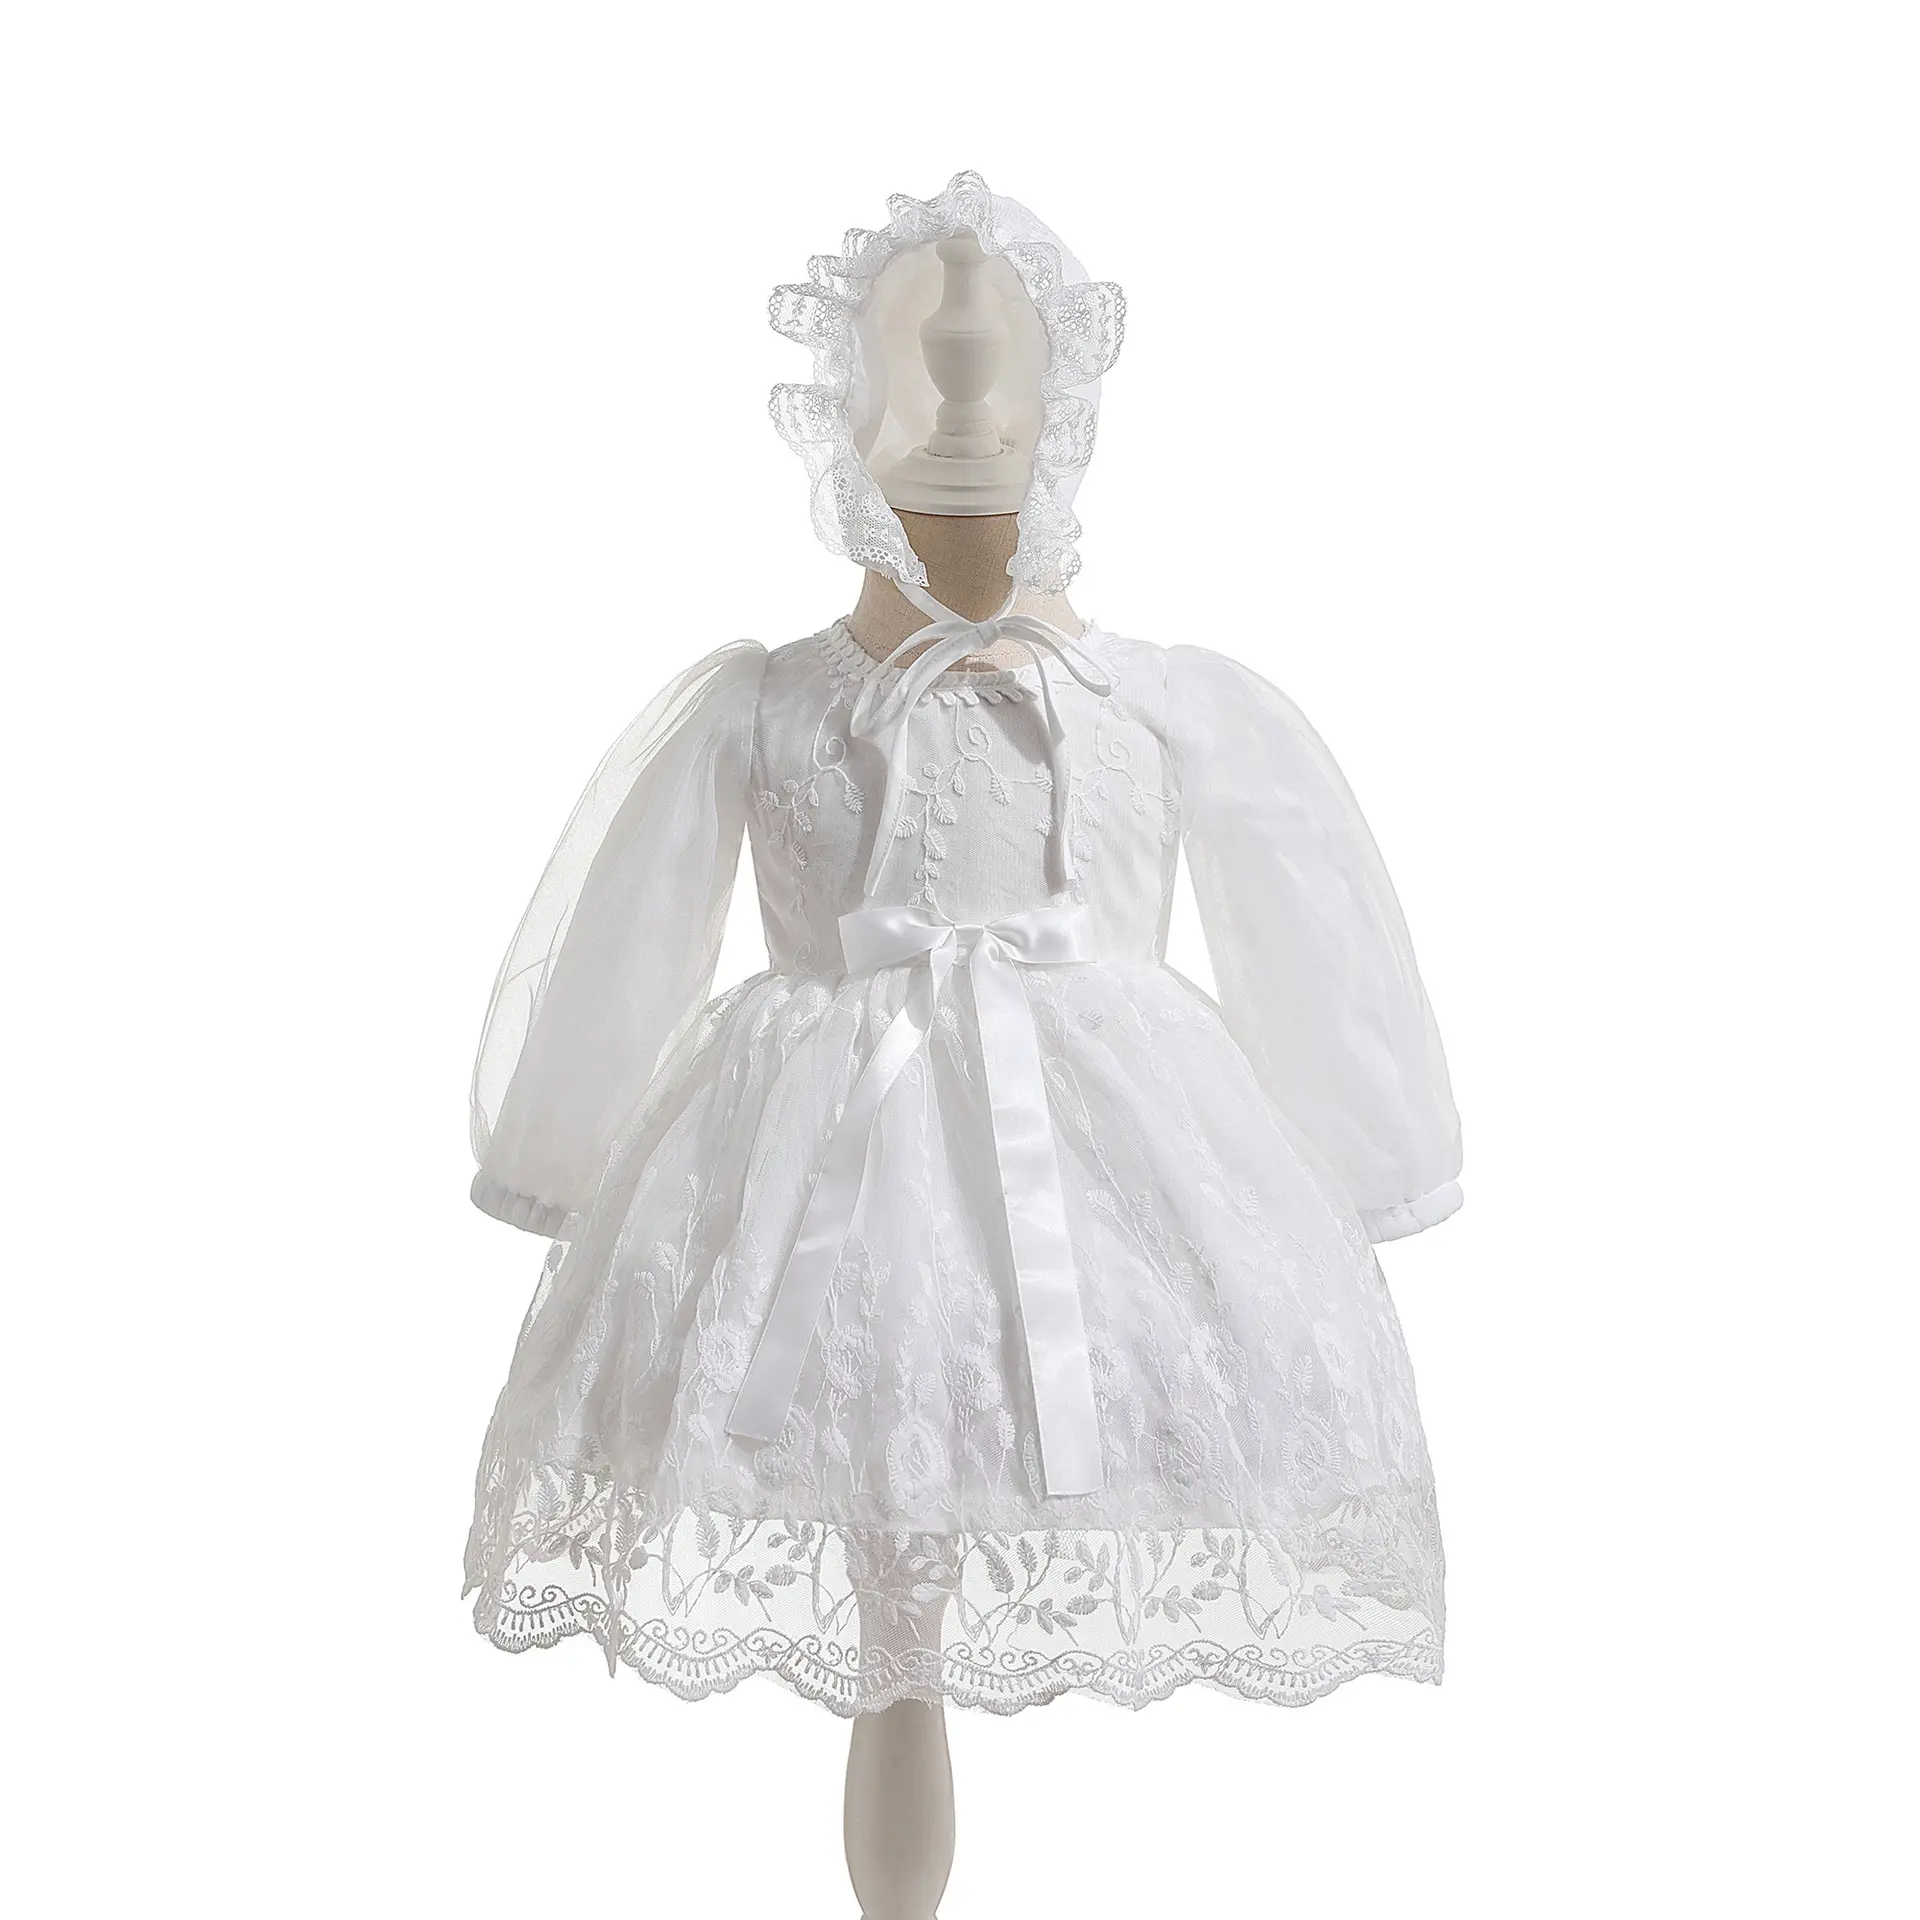 Robes de baptême pour bébé fille de 2 ans brossé 3 m blanc à prix compétitif